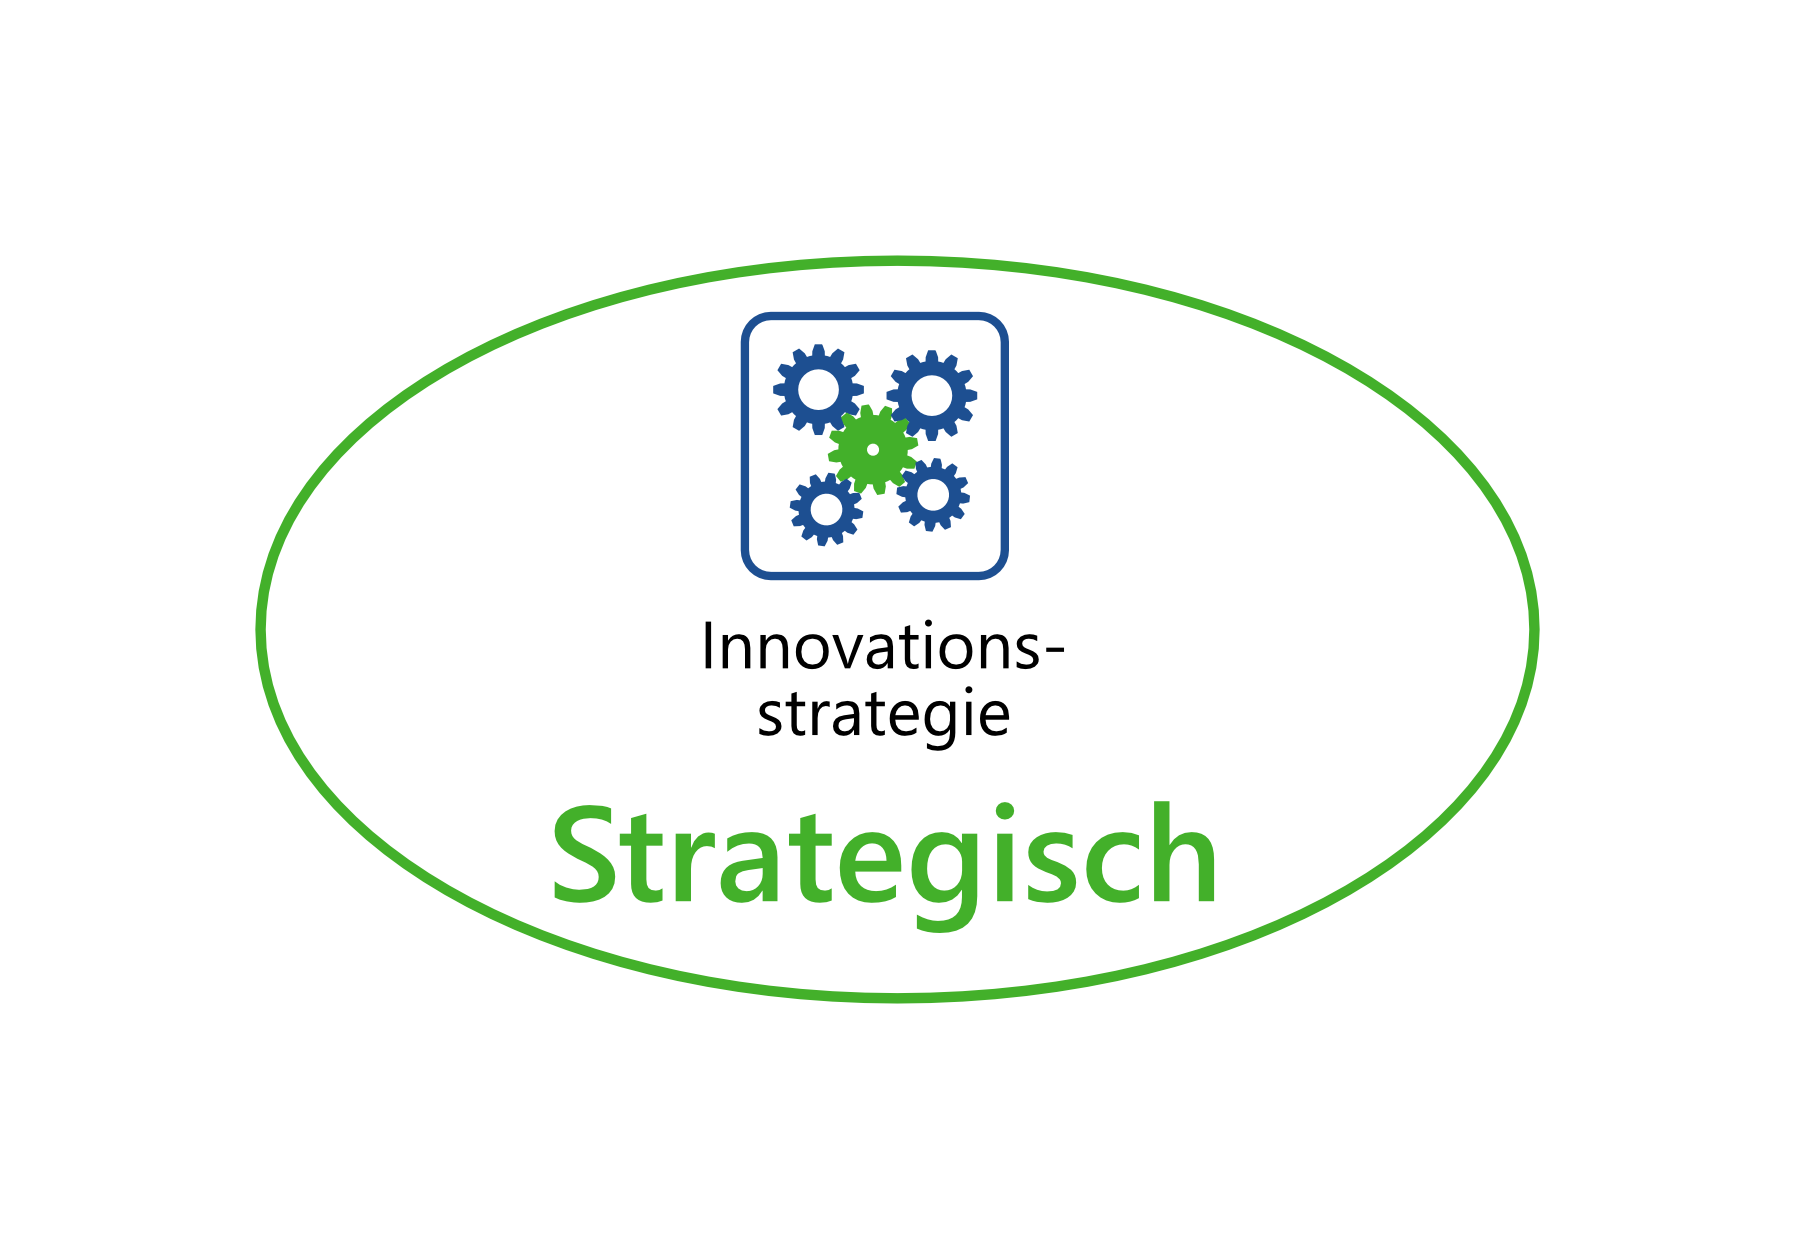 4-W-Modell Strategie Strategisch